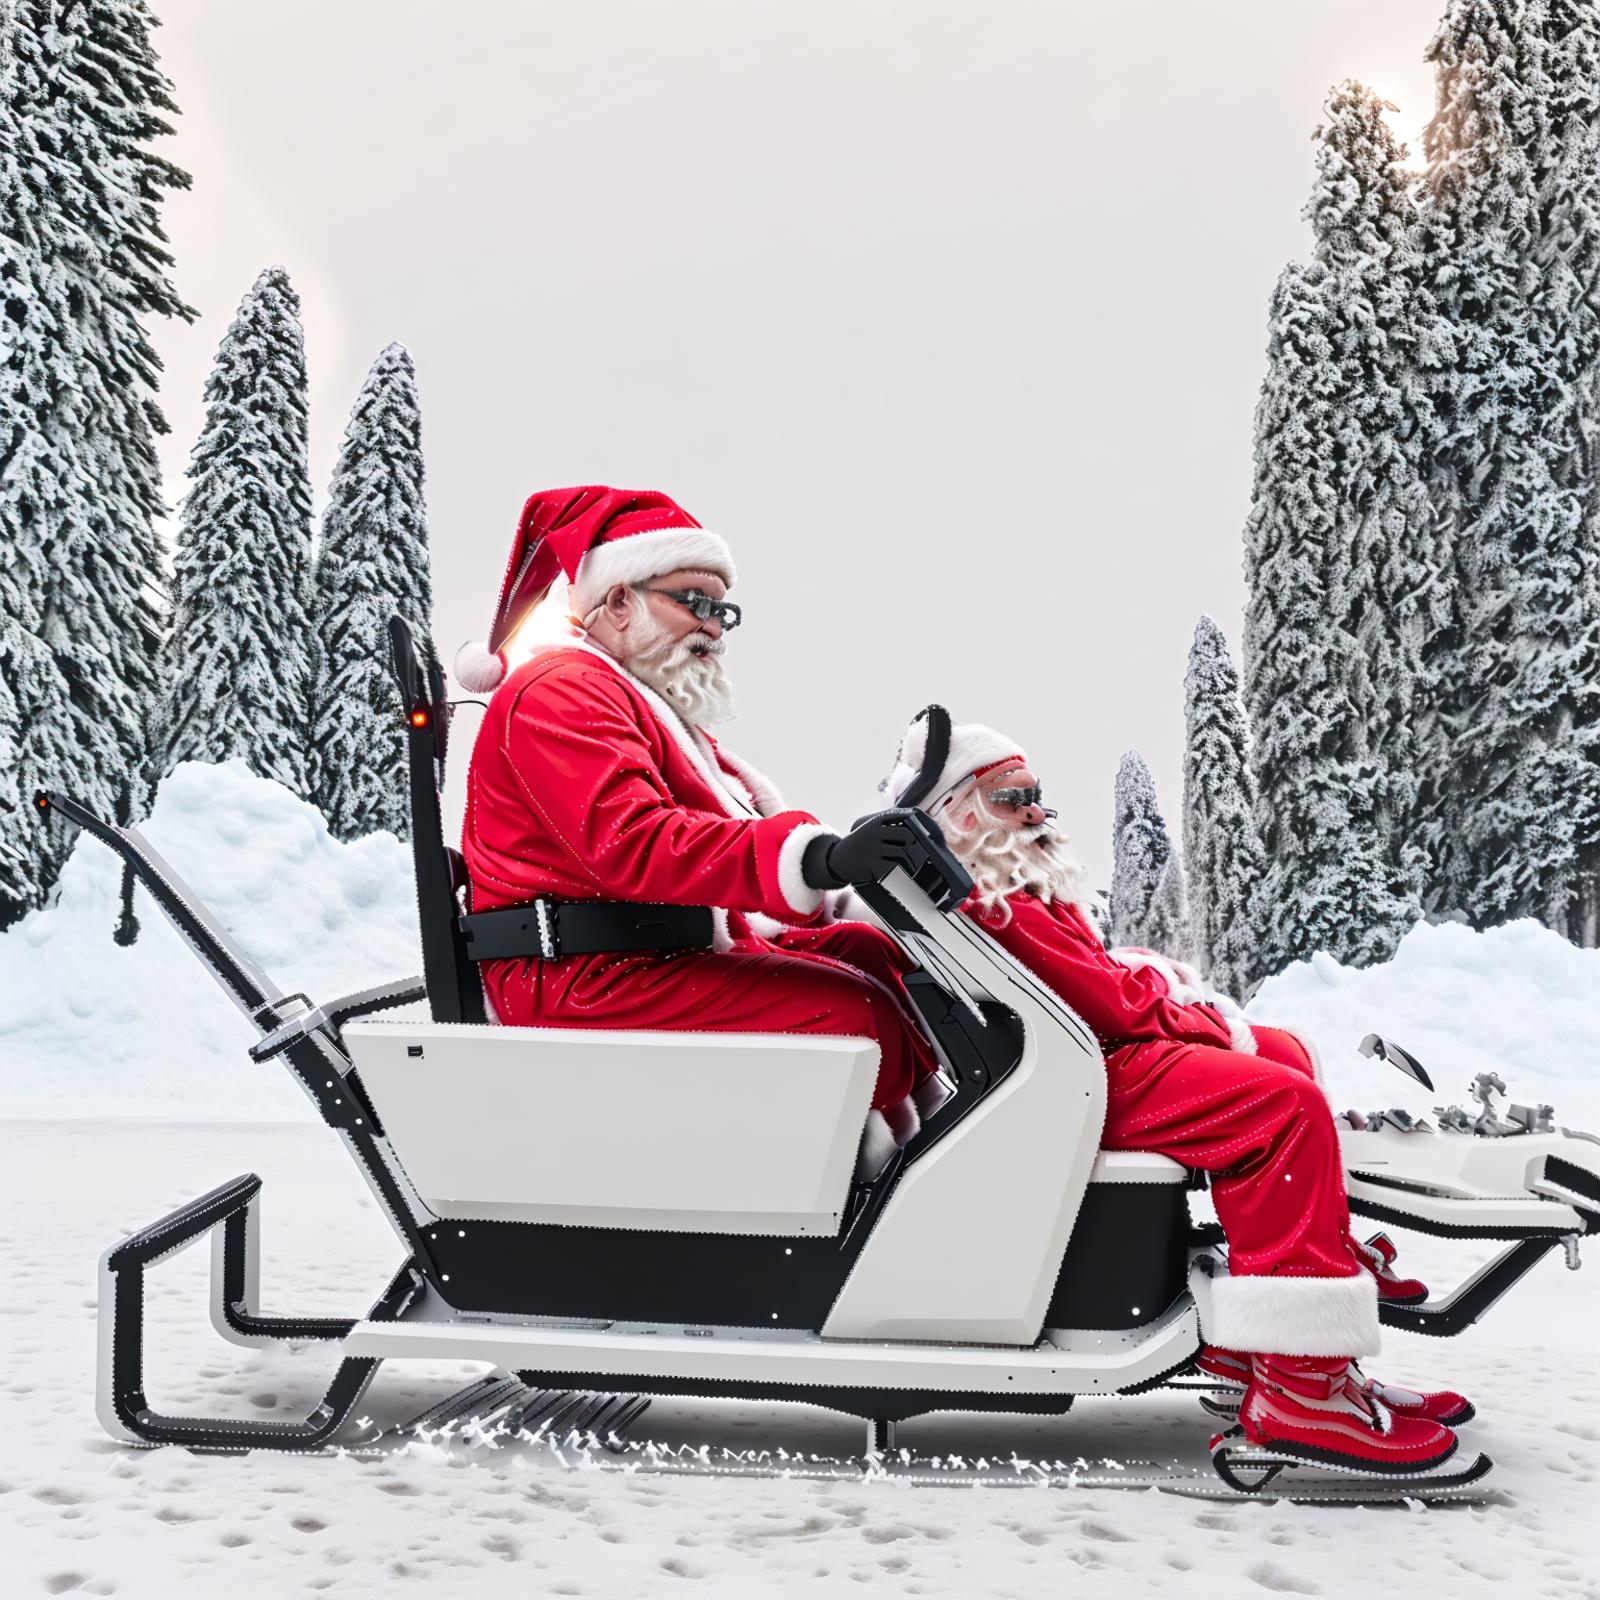 Santa's Rides image by eurotaku